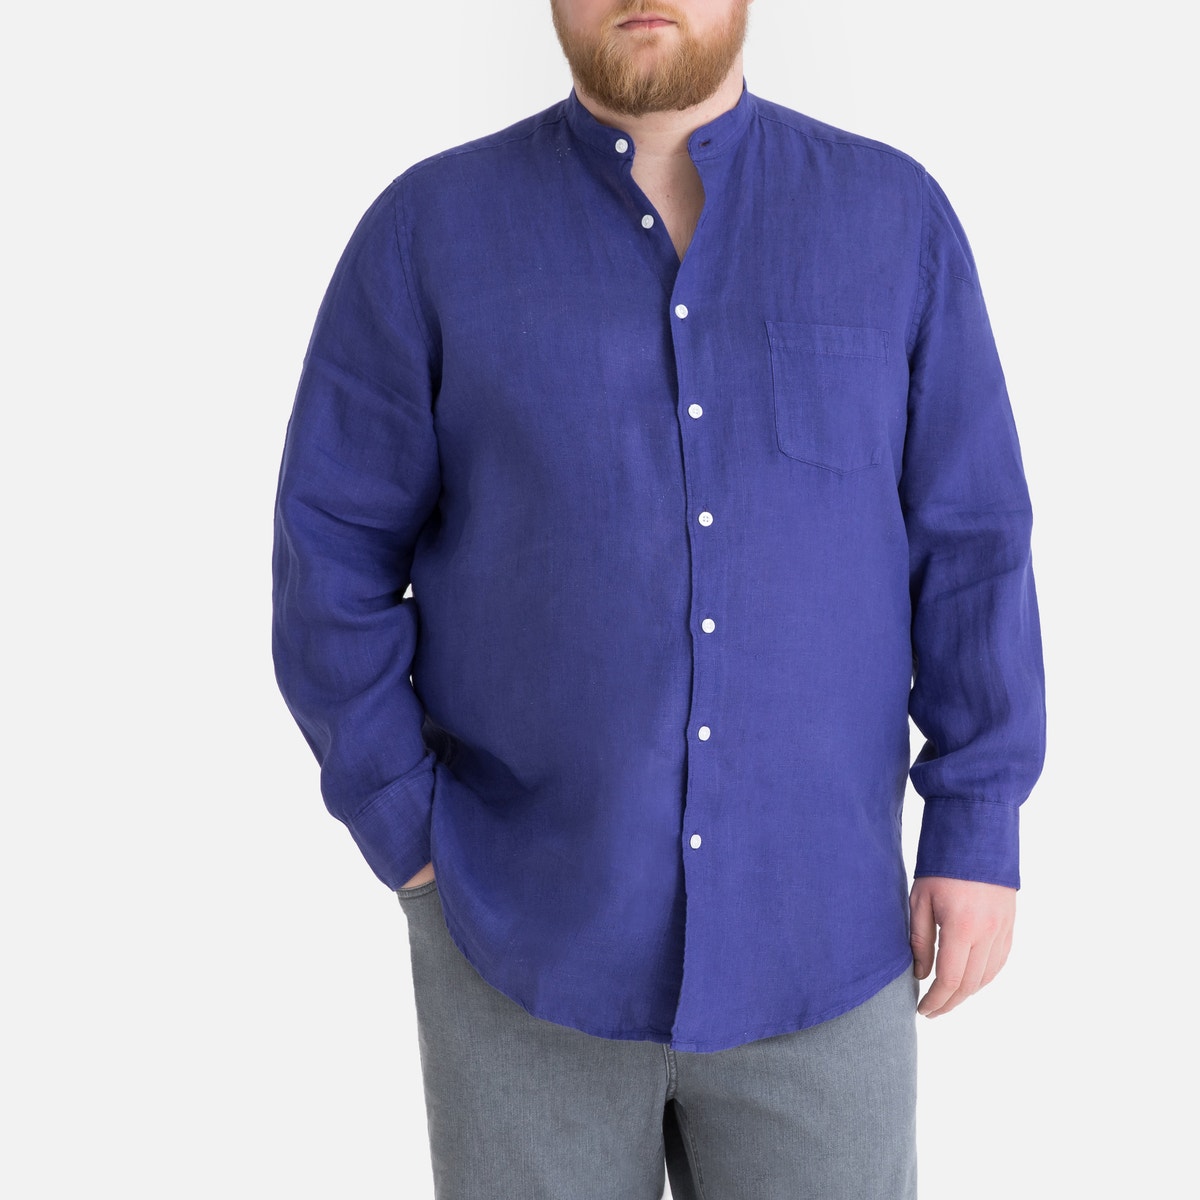 ΑΝΔΡΑΣ | Μπλούζες & Πουκάμισα | Πουκάμισα Λινό πουκάμισο με γιακά μάο